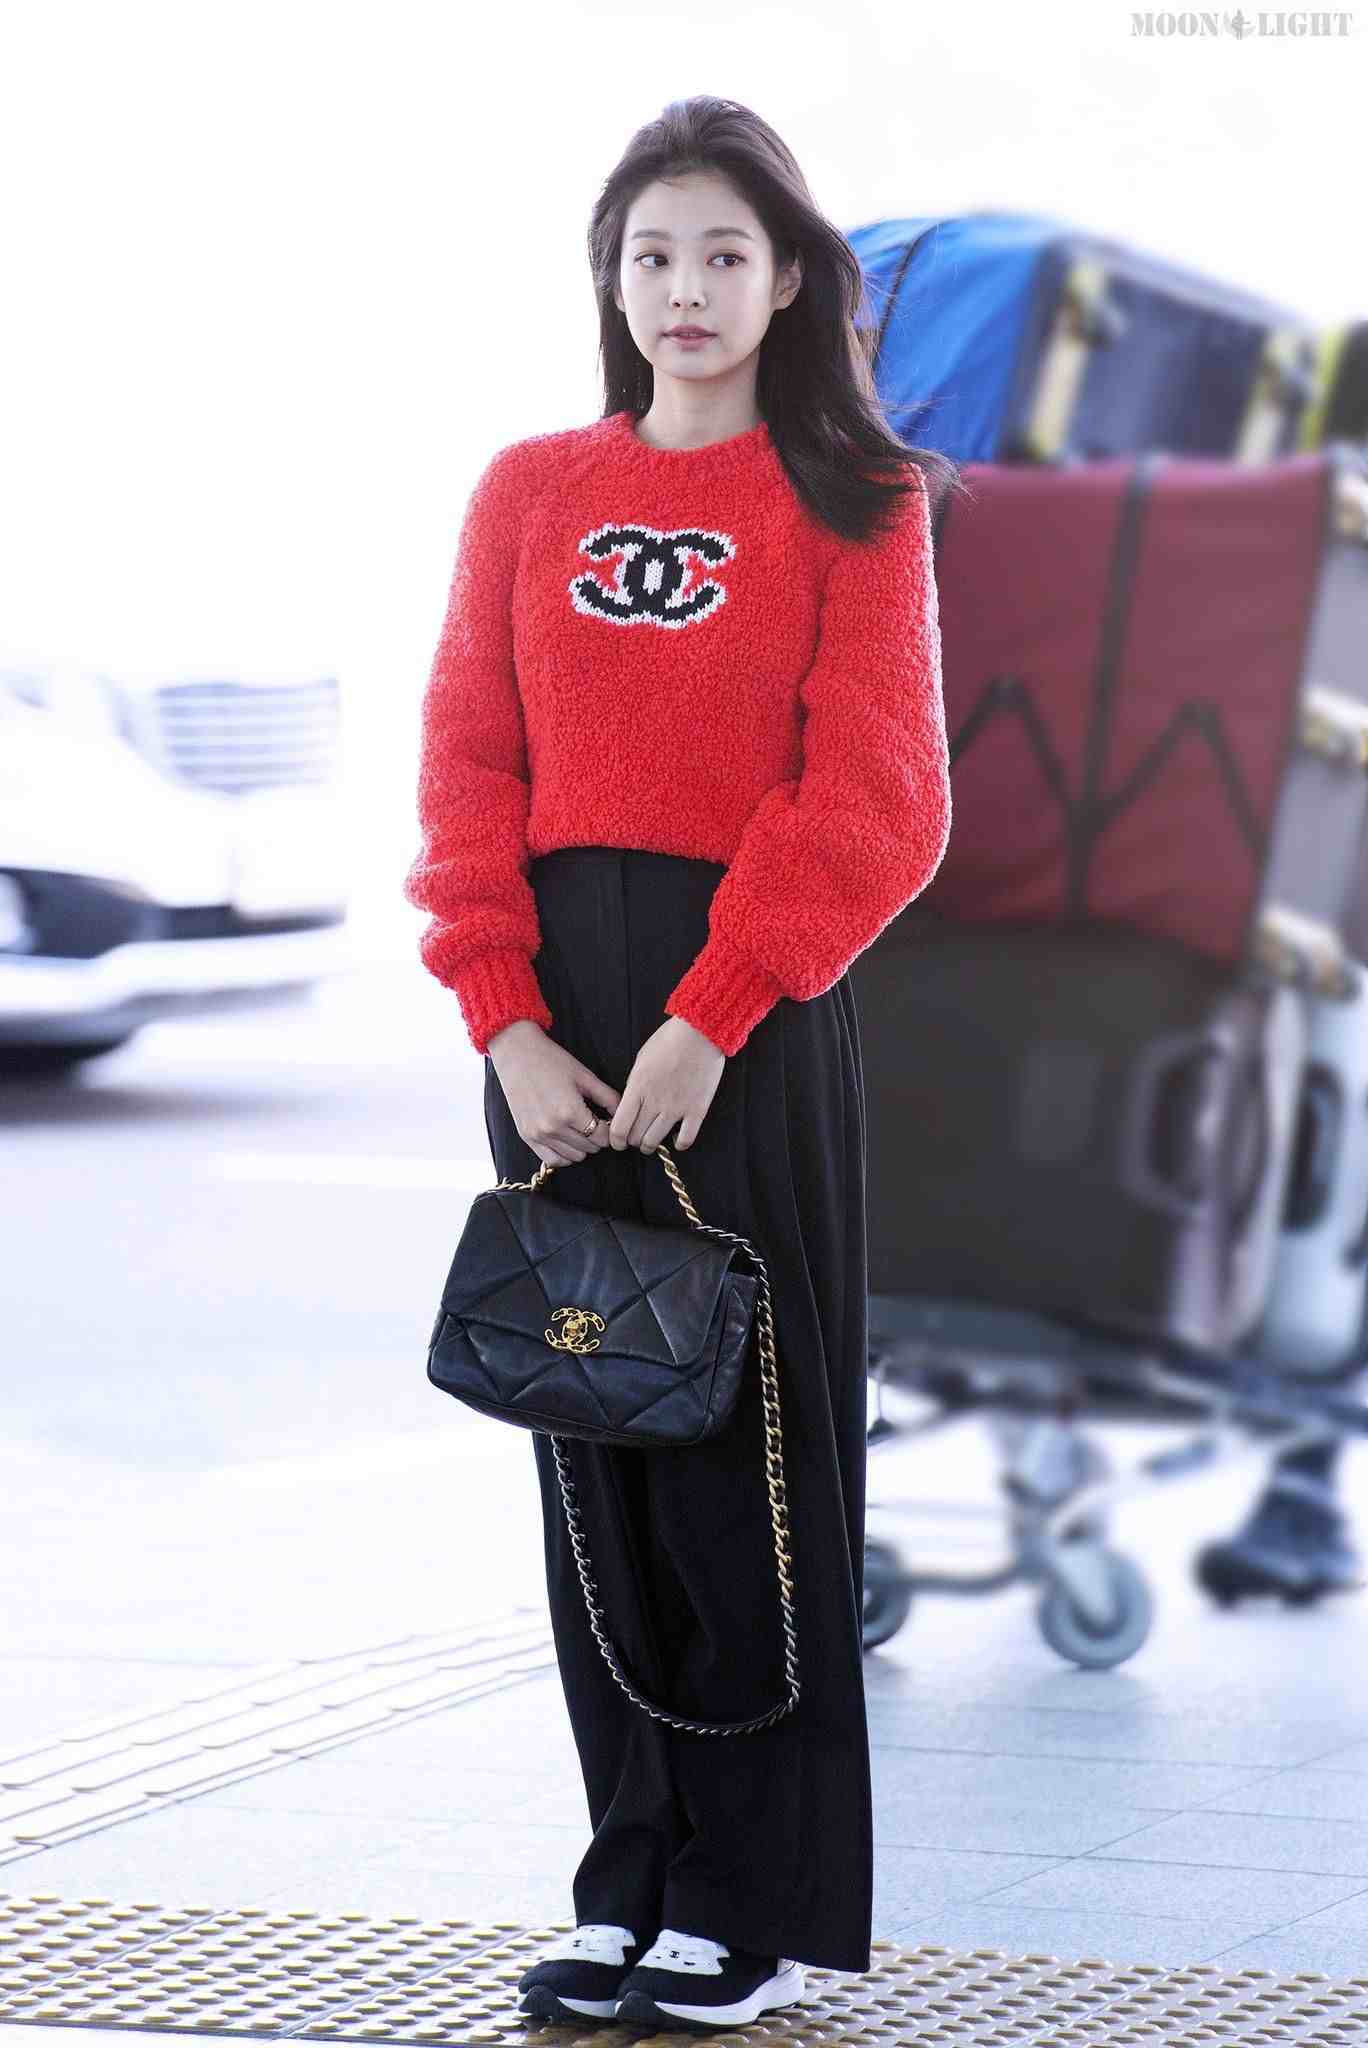 Áo len dáng ngắn được Jennie phối cùng quần tây màu đen. Chiếc áo màu đỏ hiệu Chanel vô cùng nổi bật. Vì phối đồ theo phong cách tối giản nên nữ ca sĩ có được vẻ ngoài trẻ trung nhưng sang trọng. Ảnh: Naver.